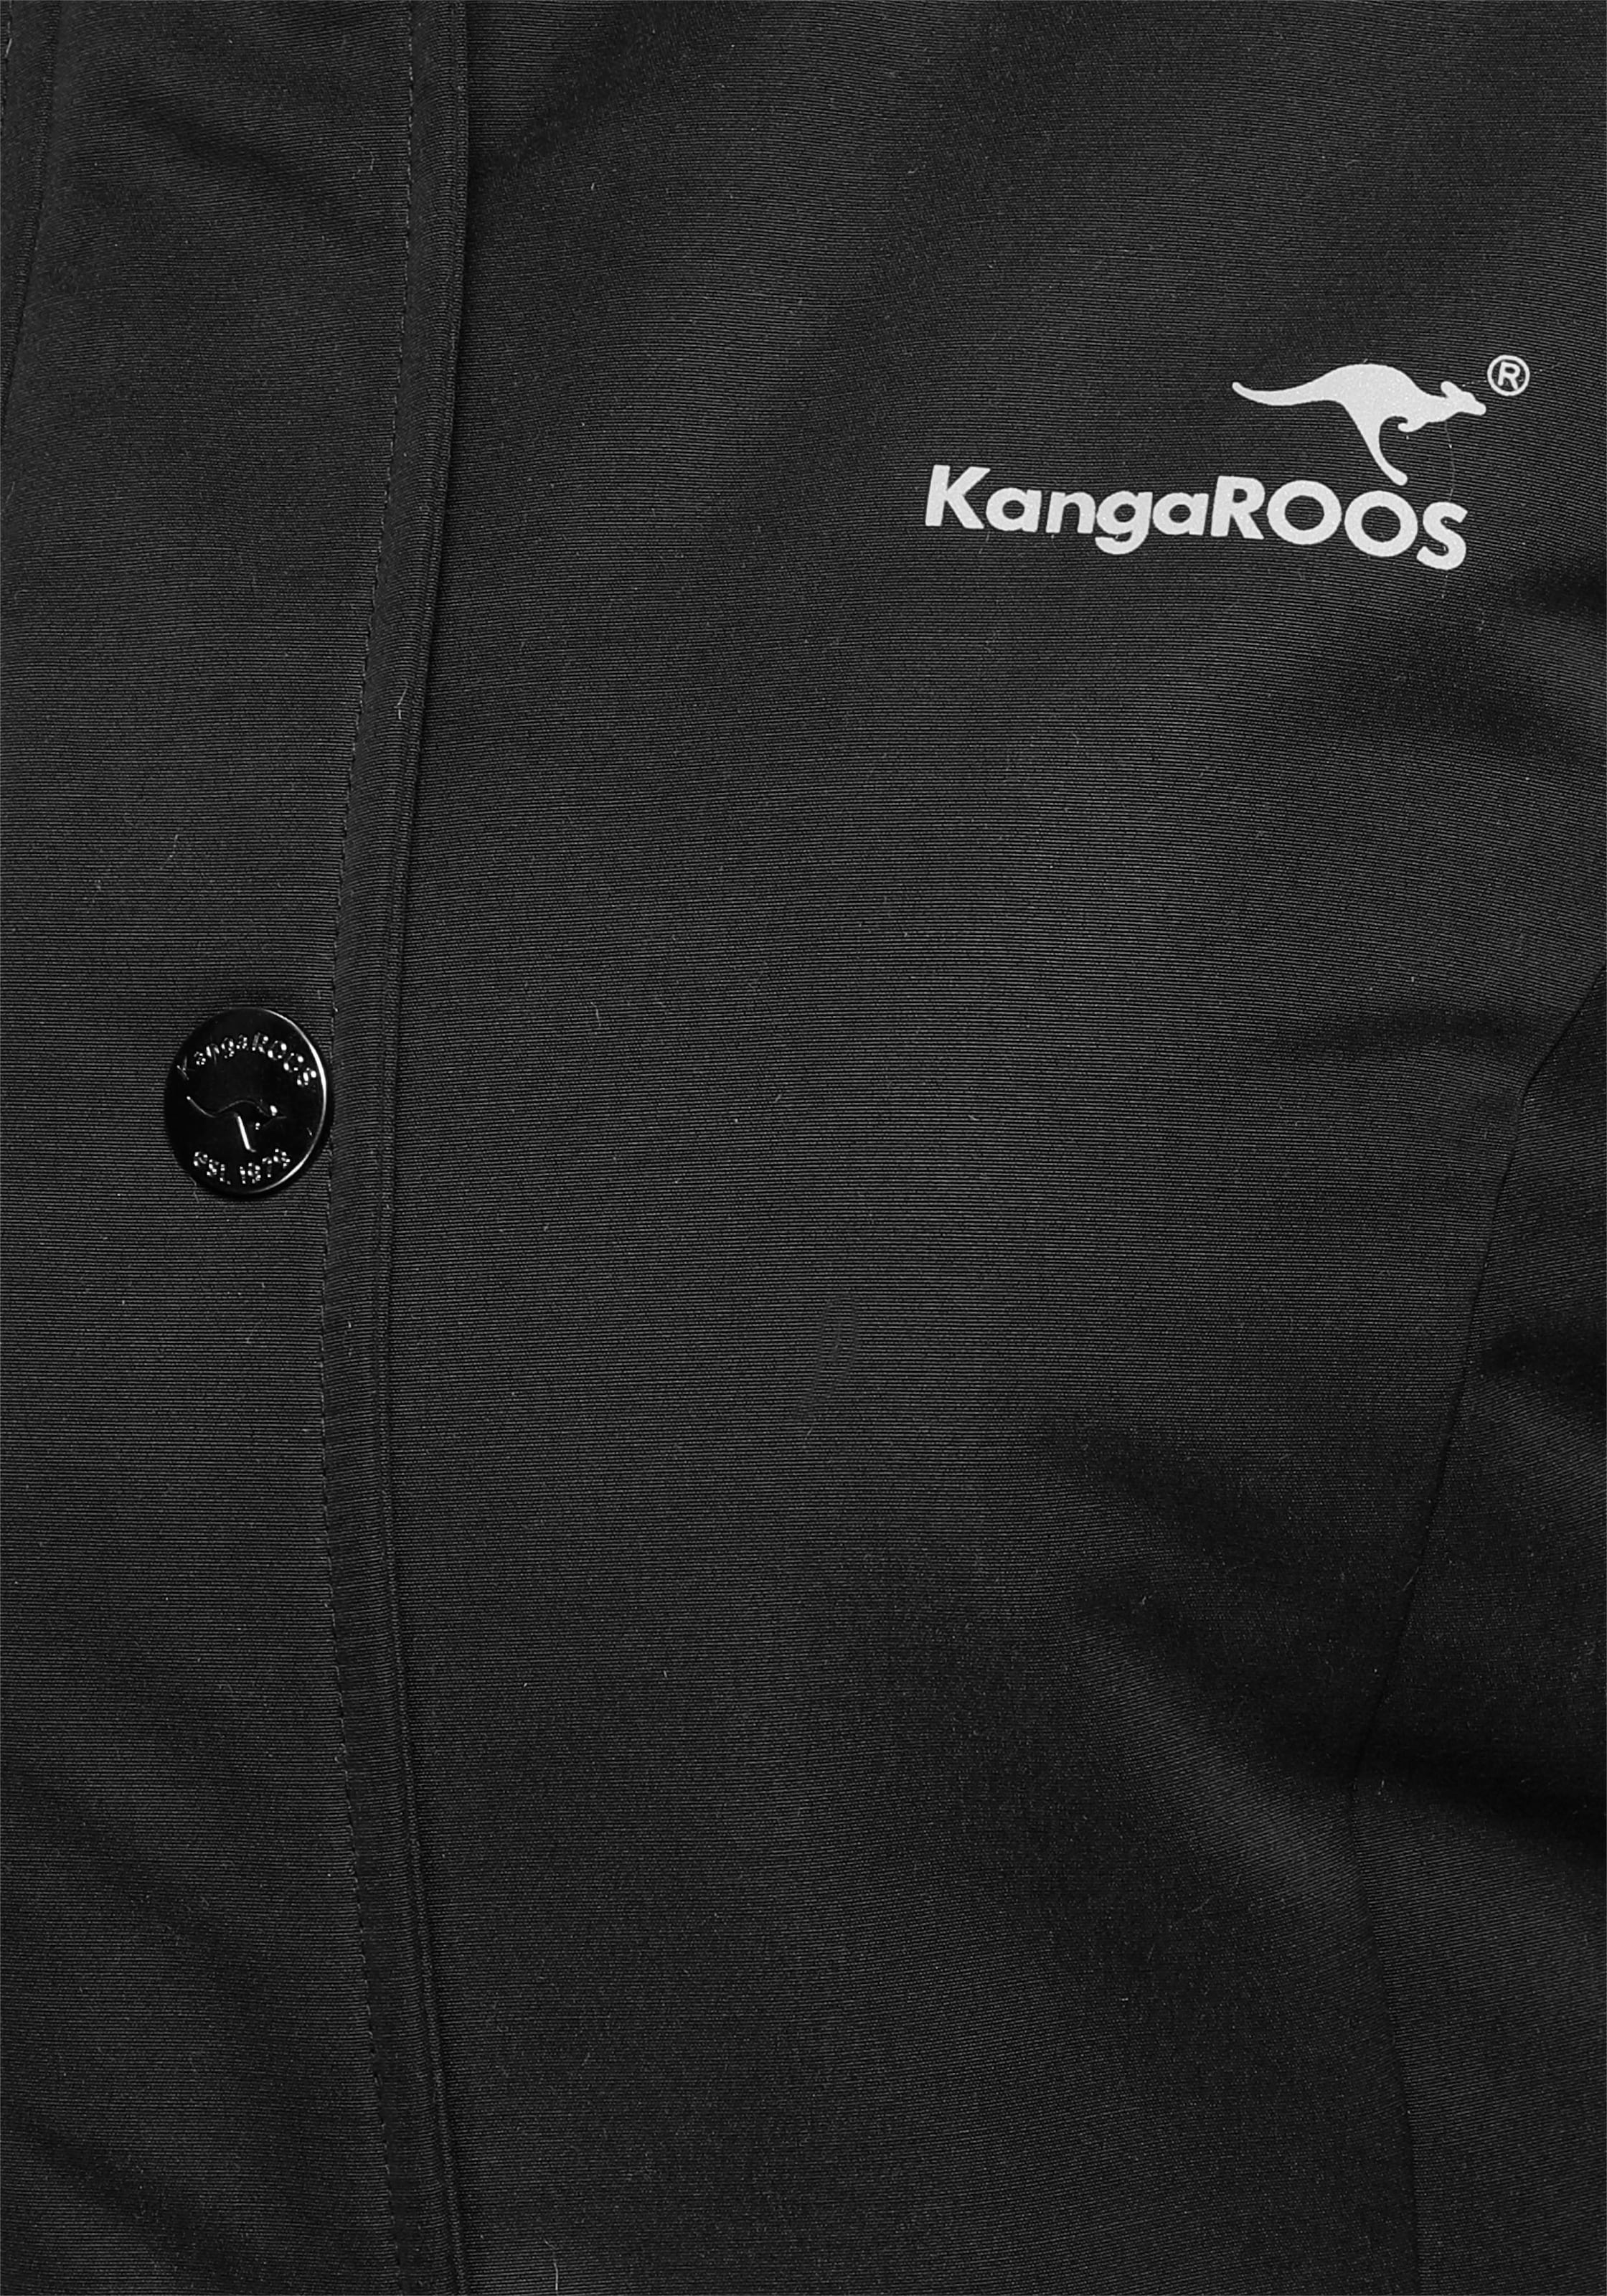 KangaROOS Langjacke, mit Kapuze, mit 2-Wege-Reißverschluss und vielen Taschen